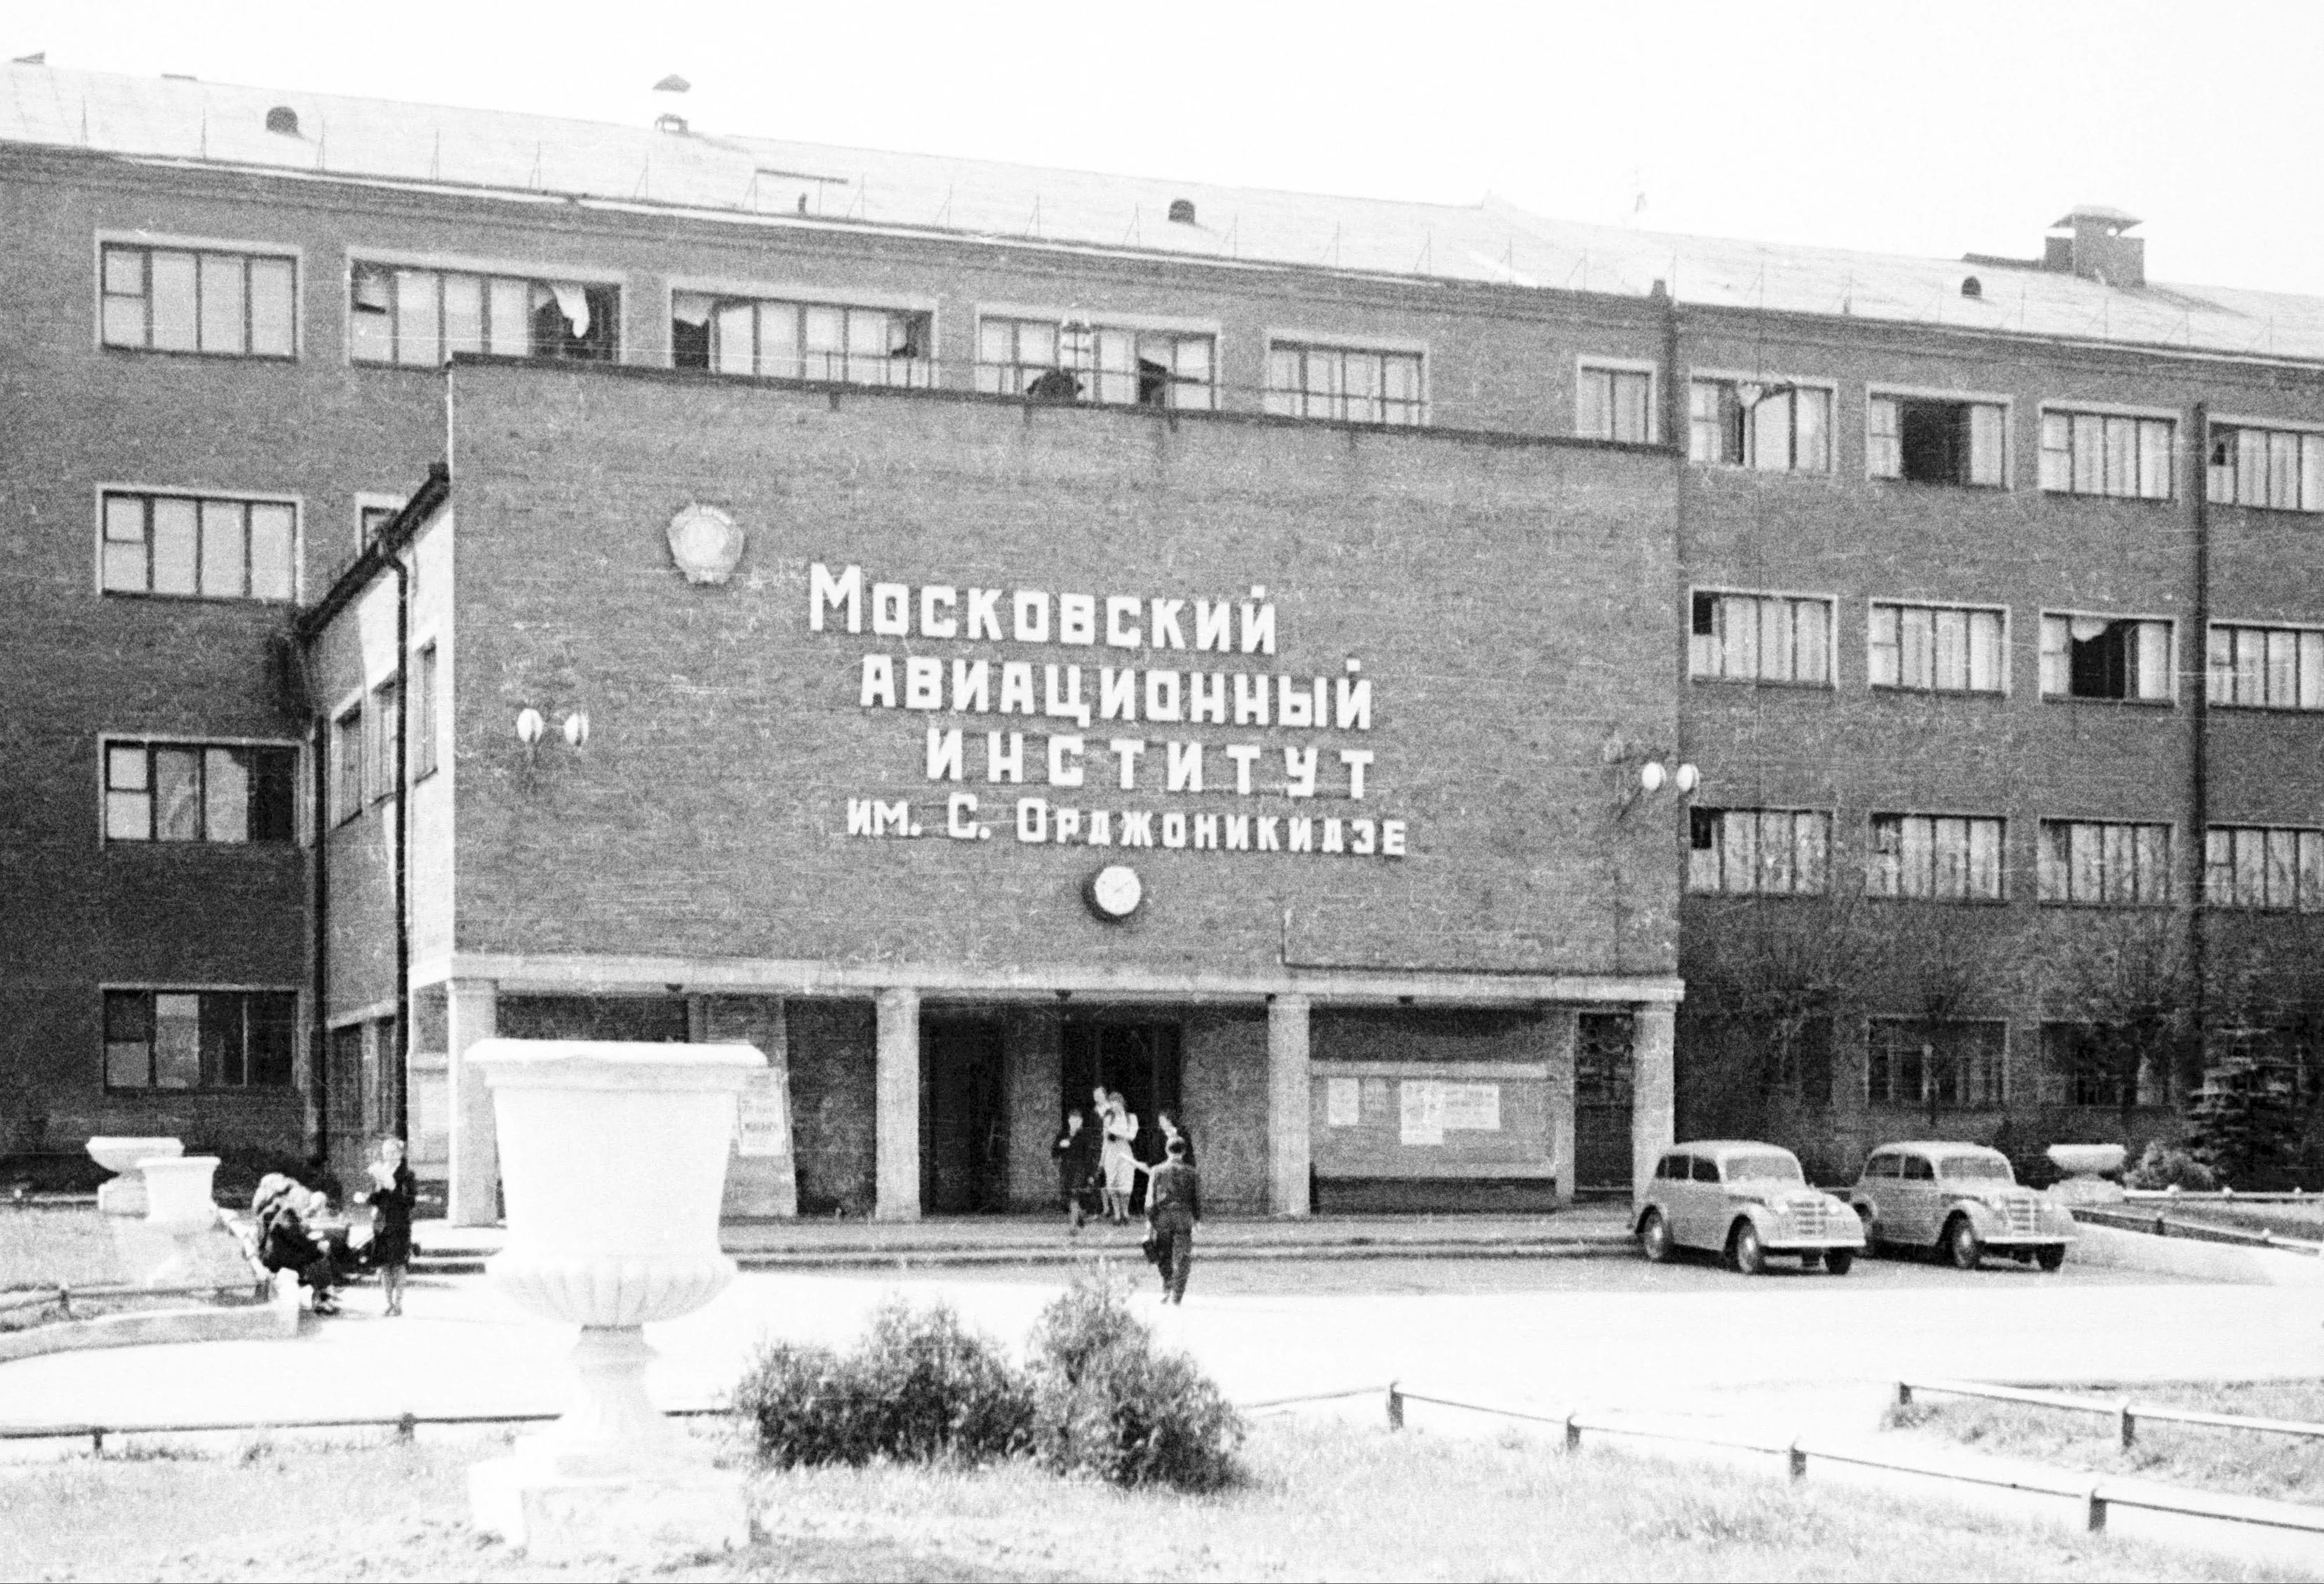 Московский авиационный институт 1950